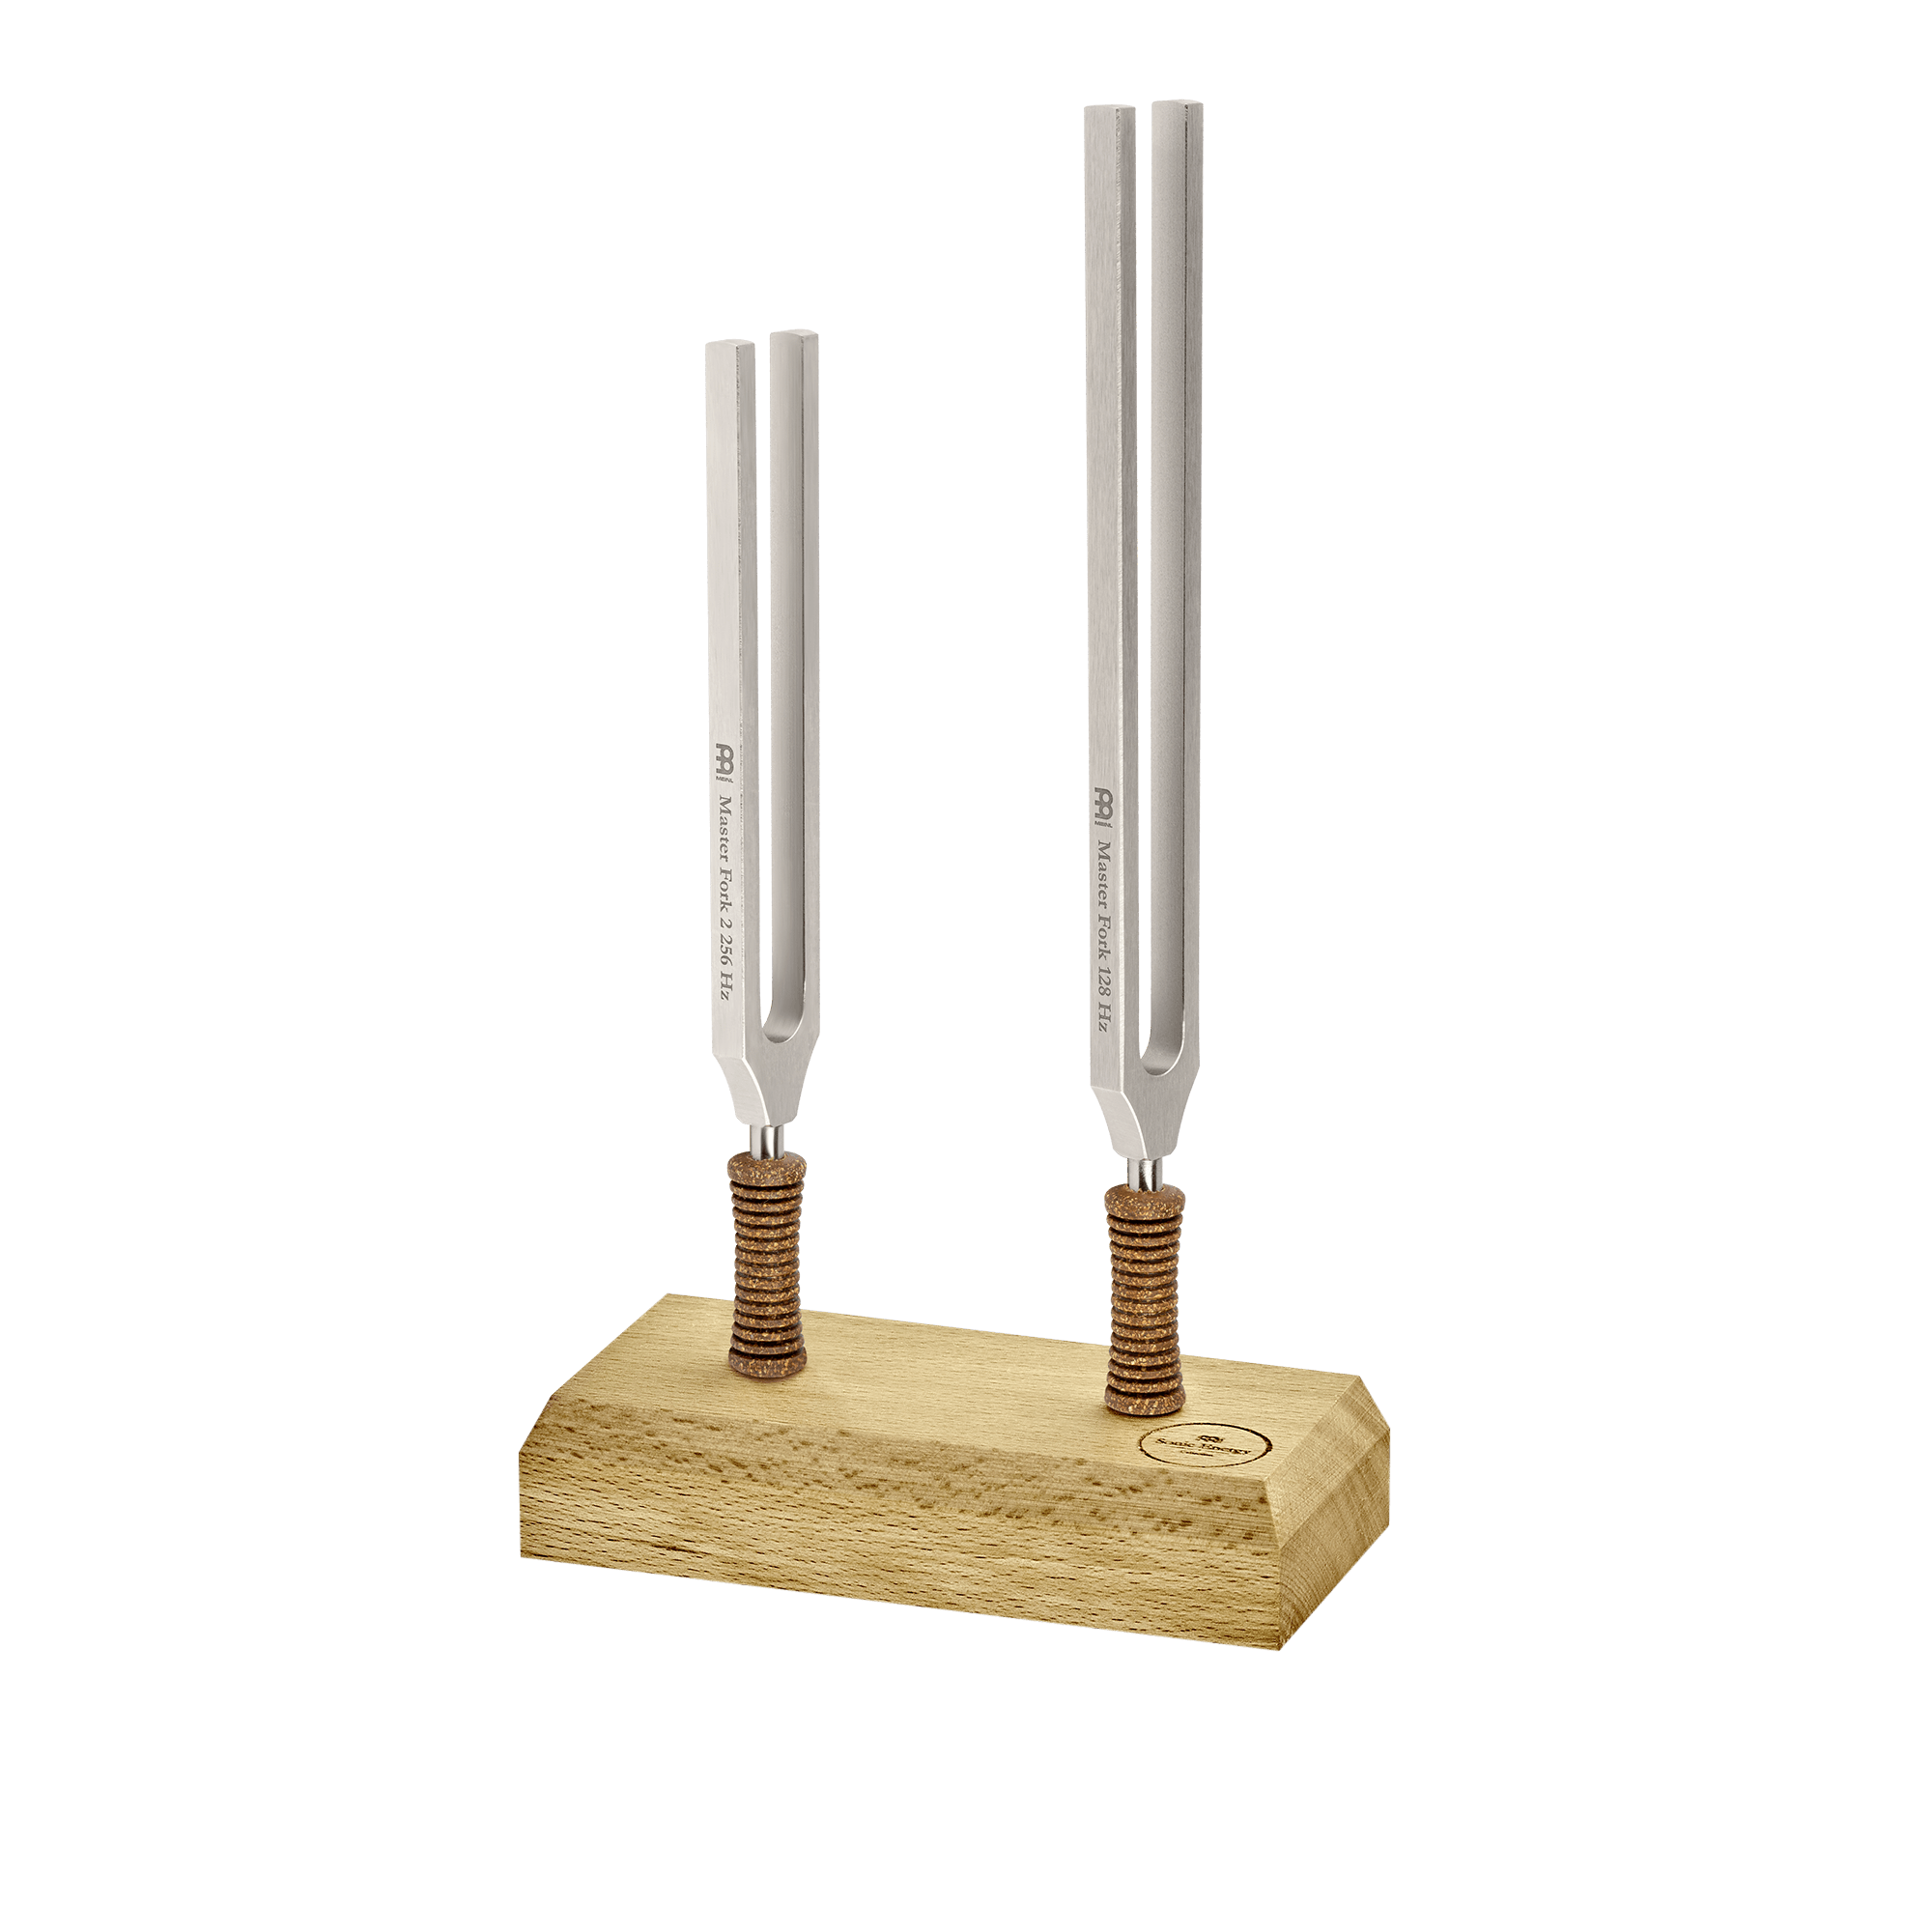 Master Tuning Fork Set - Premium Weighted Steel 128 Hz / 256 Hz - Hand Bells & Chimes